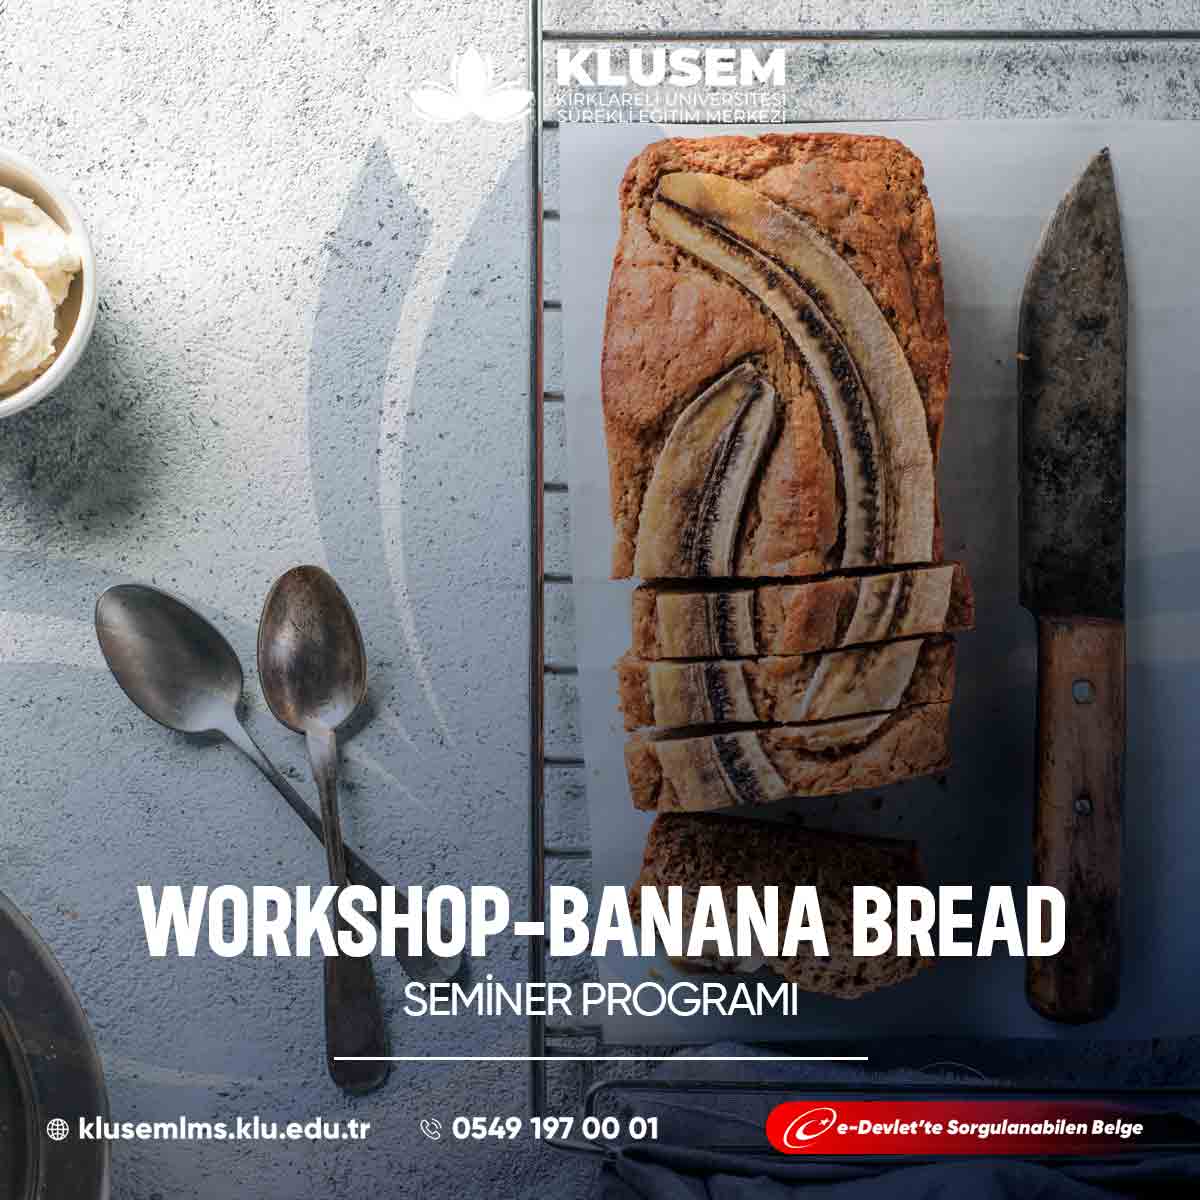  "Banana Bread Workshop," katılımcılara evde lezzetli muzlu ekmek yapmanın inceliklerini öğreten bir atölyedir. 